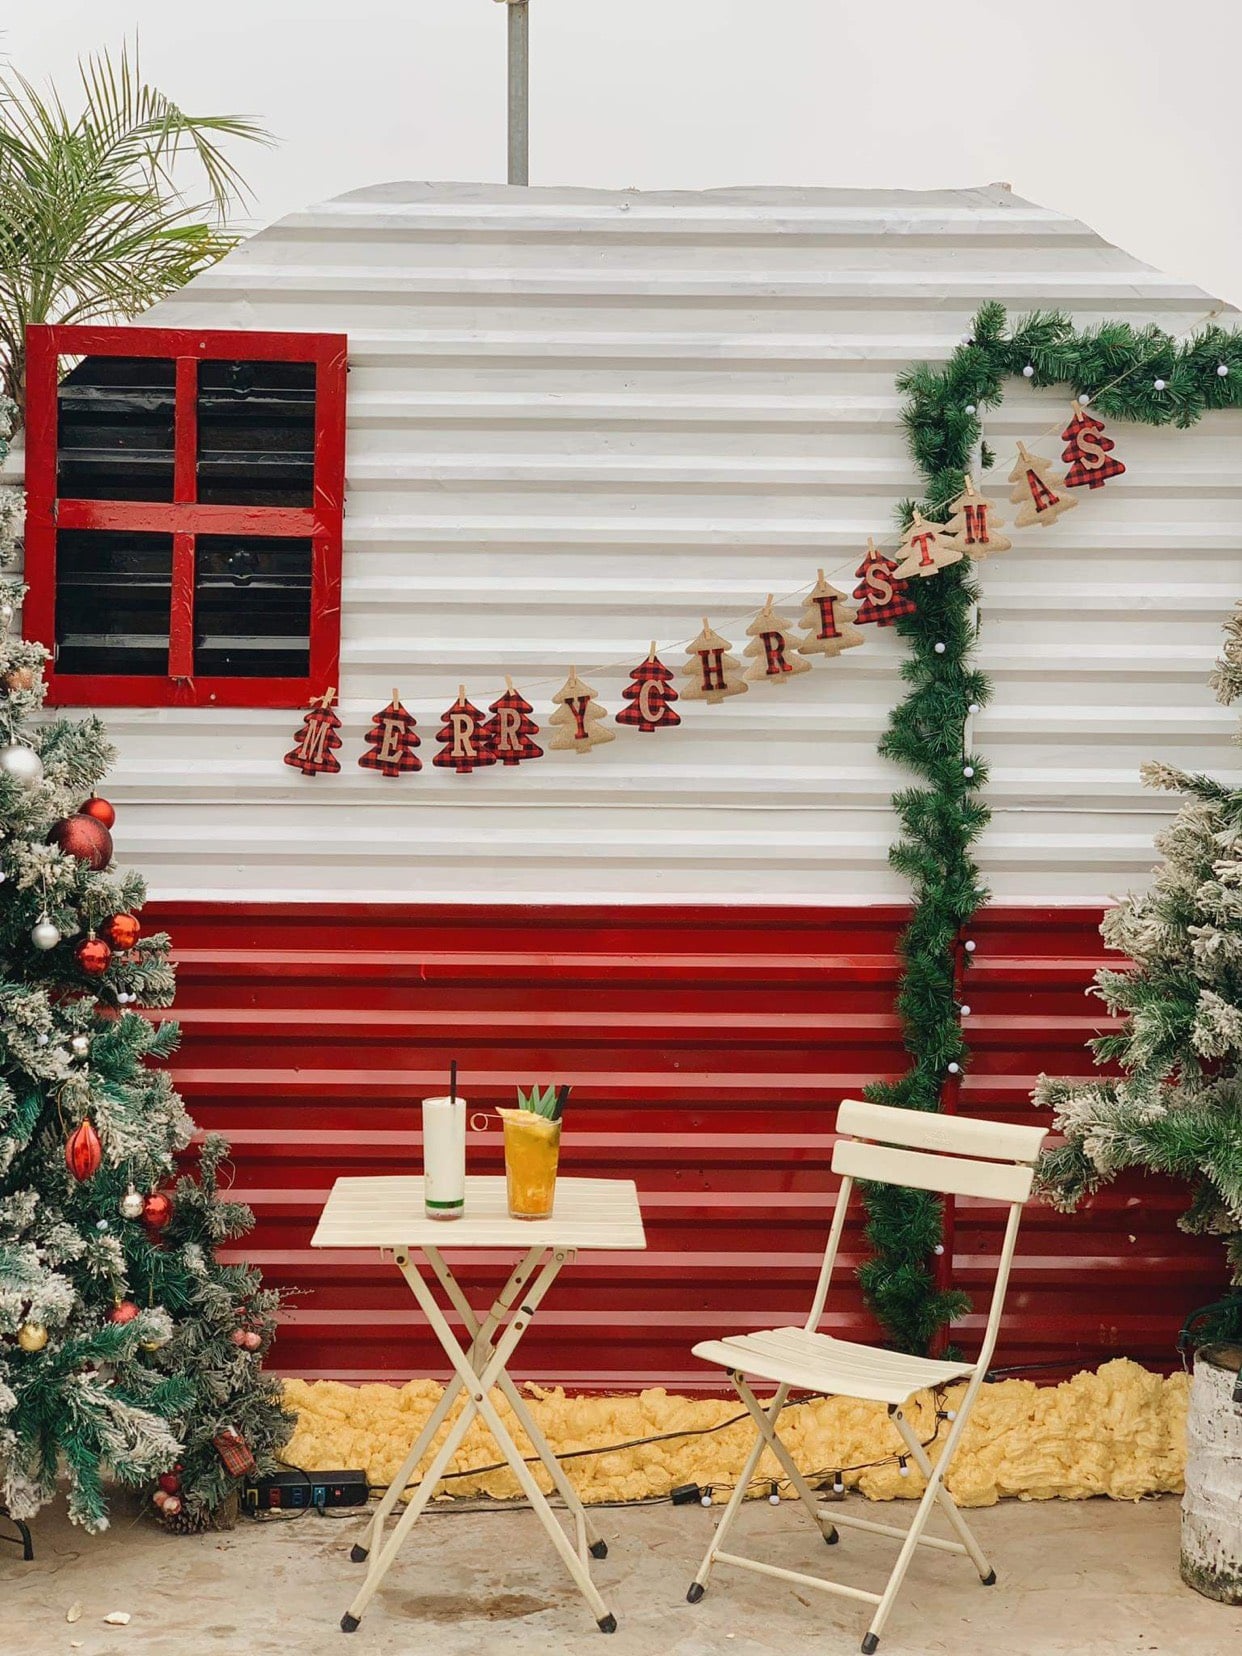 Những quán cafe trang trí Noel sớm dành cho khách hàng trong buổi hẹn hò dịp cuối năm - Ảnh 8.